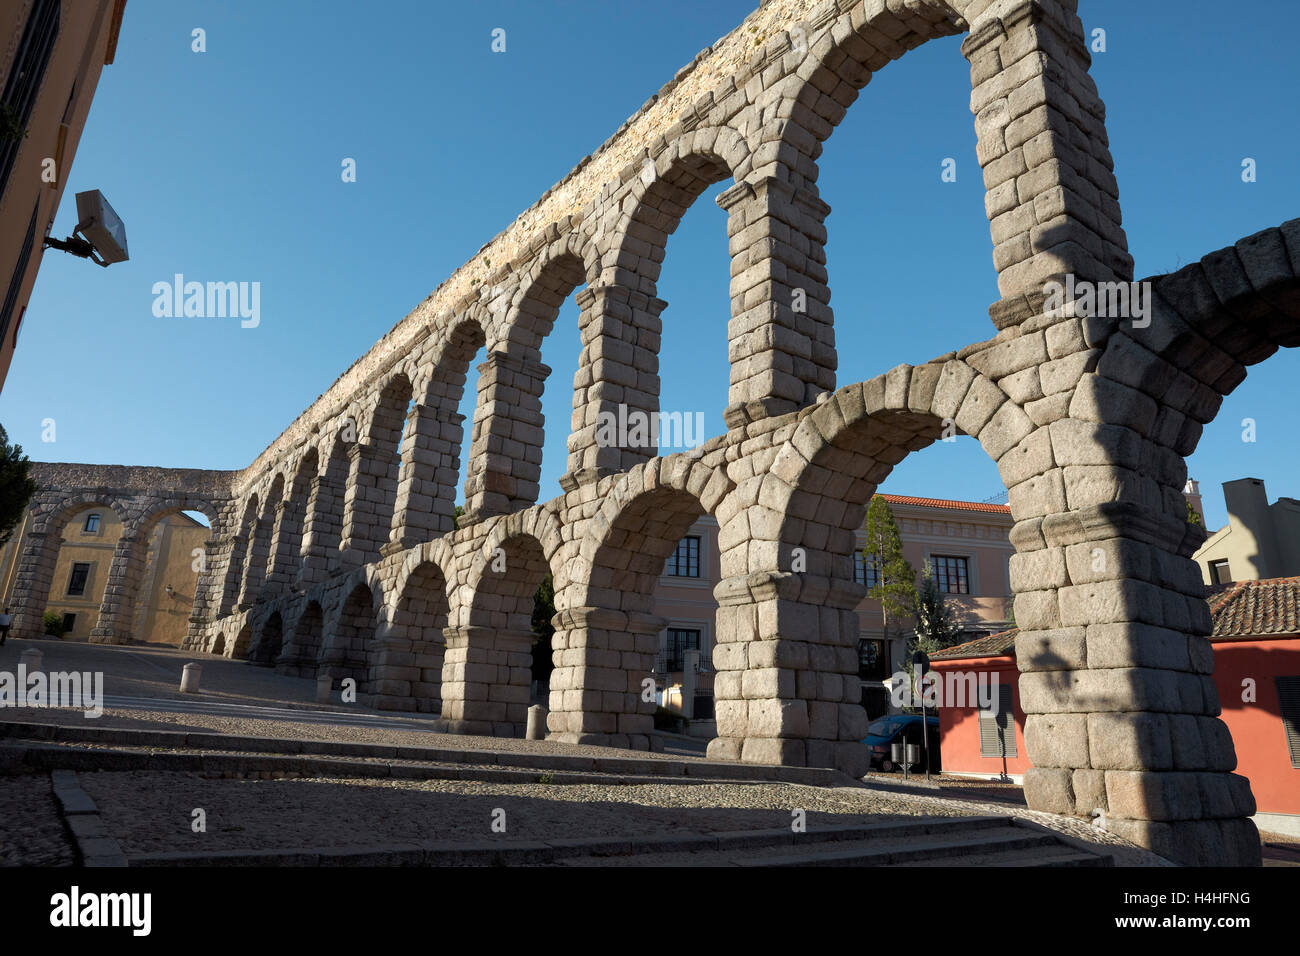 Aqueduc romain. Segovia. Castille-león. L'Espagne. Banque D'Images